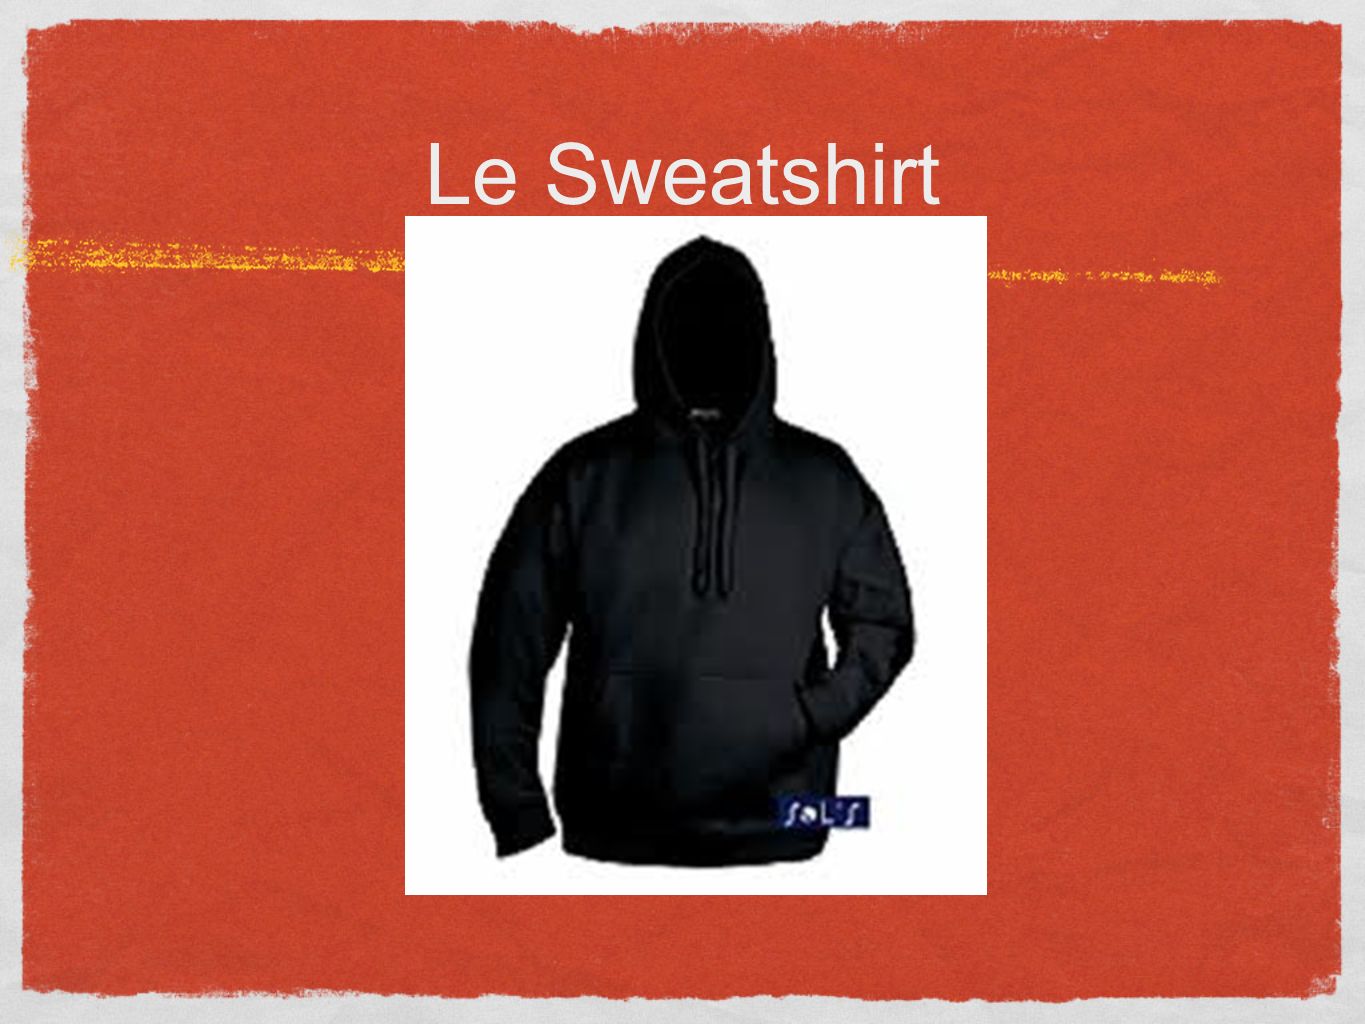 Le Sweatshirt